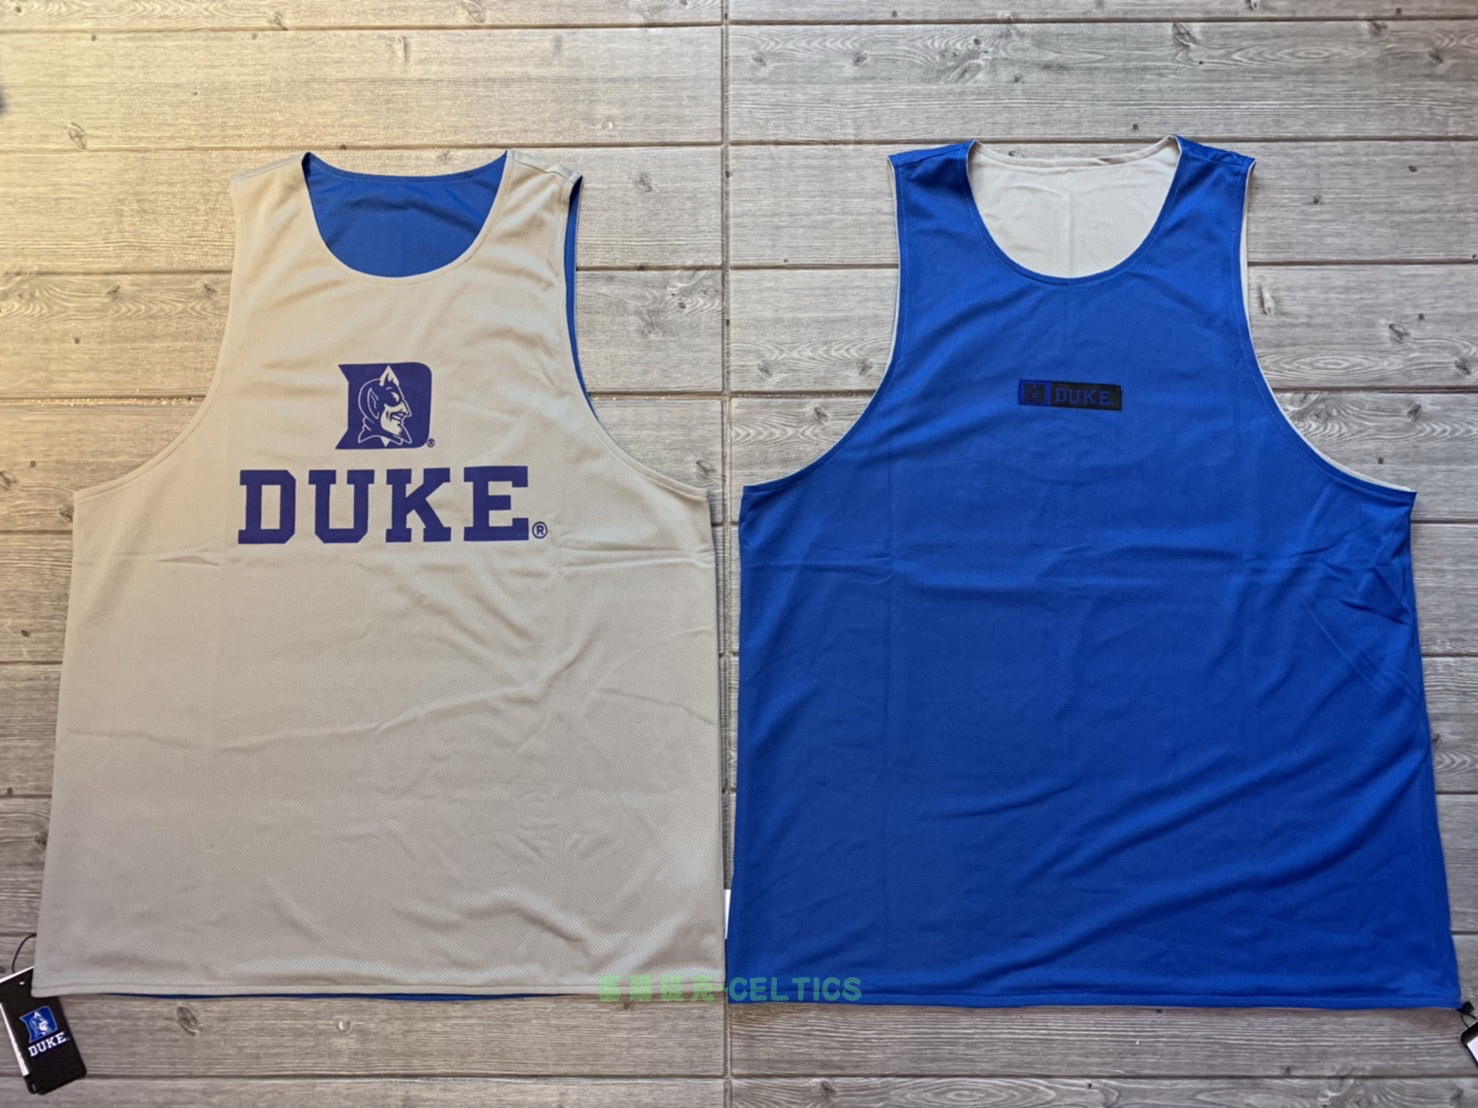 塞爾提克~NCAA 美國大學籃球 男生 雙面背心 雙面球衣 經典網眼 吸濕快排 杜克大學 藍魔鬼 灰/寶藍~有大尺碼